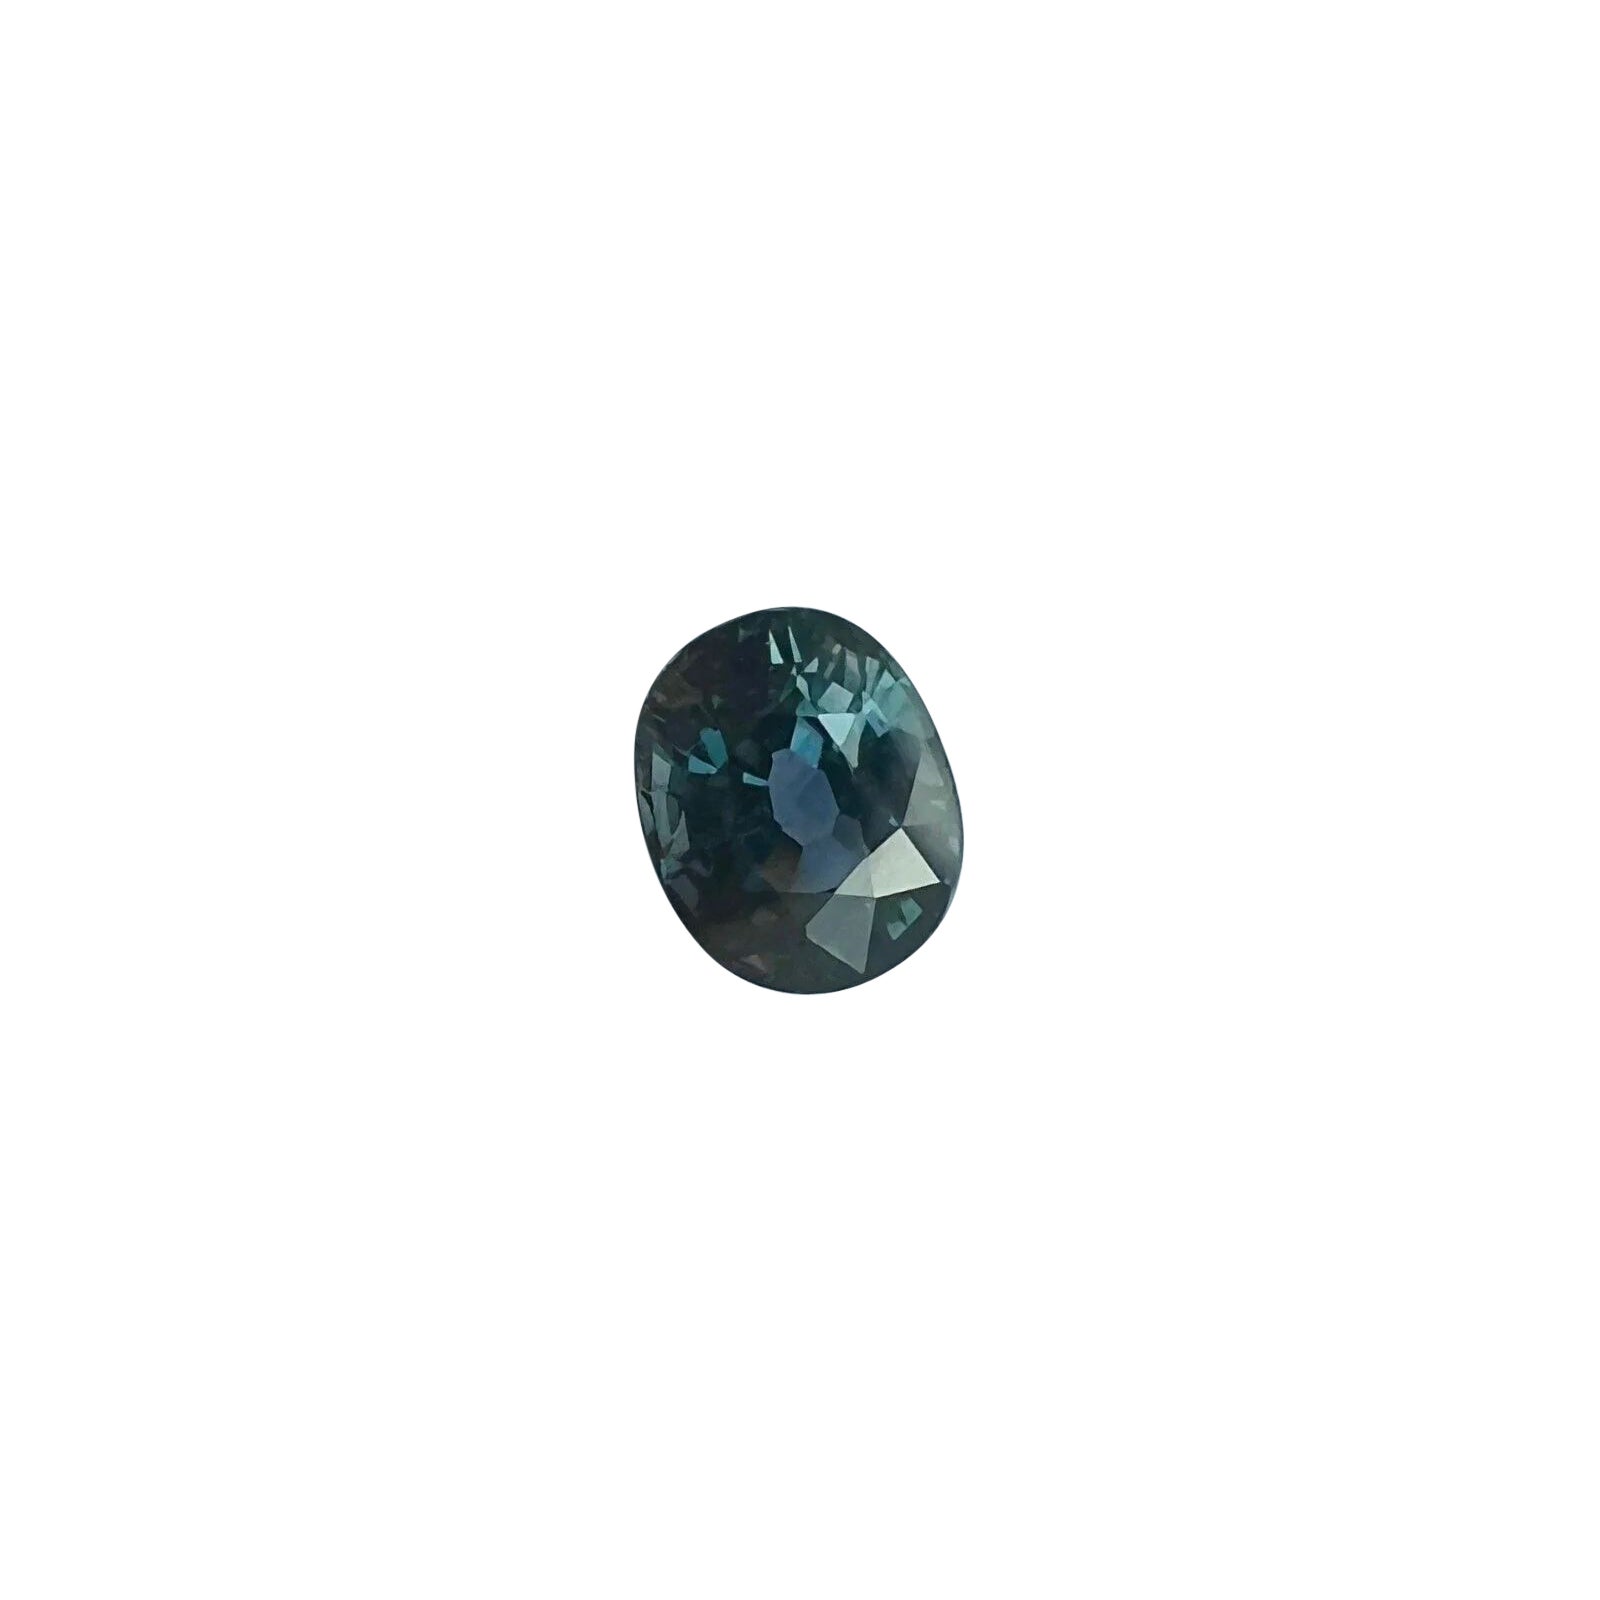 Saphir taille ovale non chauffé vert bleu violet certifié IGI de 1,08 carat à couleur changeante